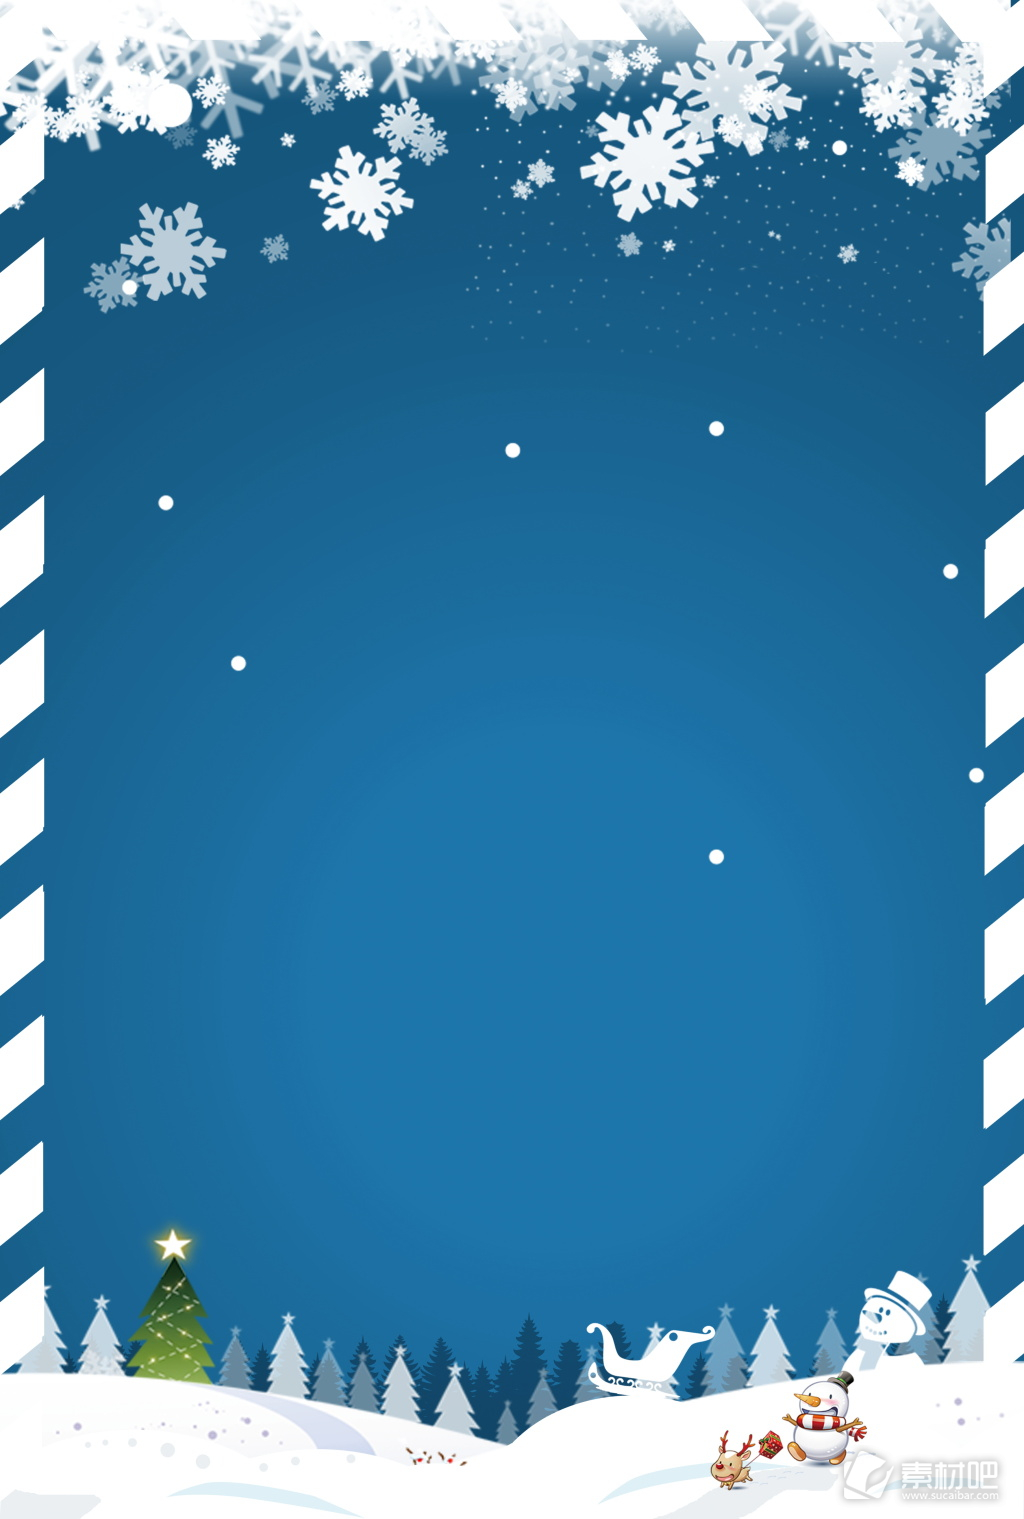 蓝色雪景圣诞节日活动背景